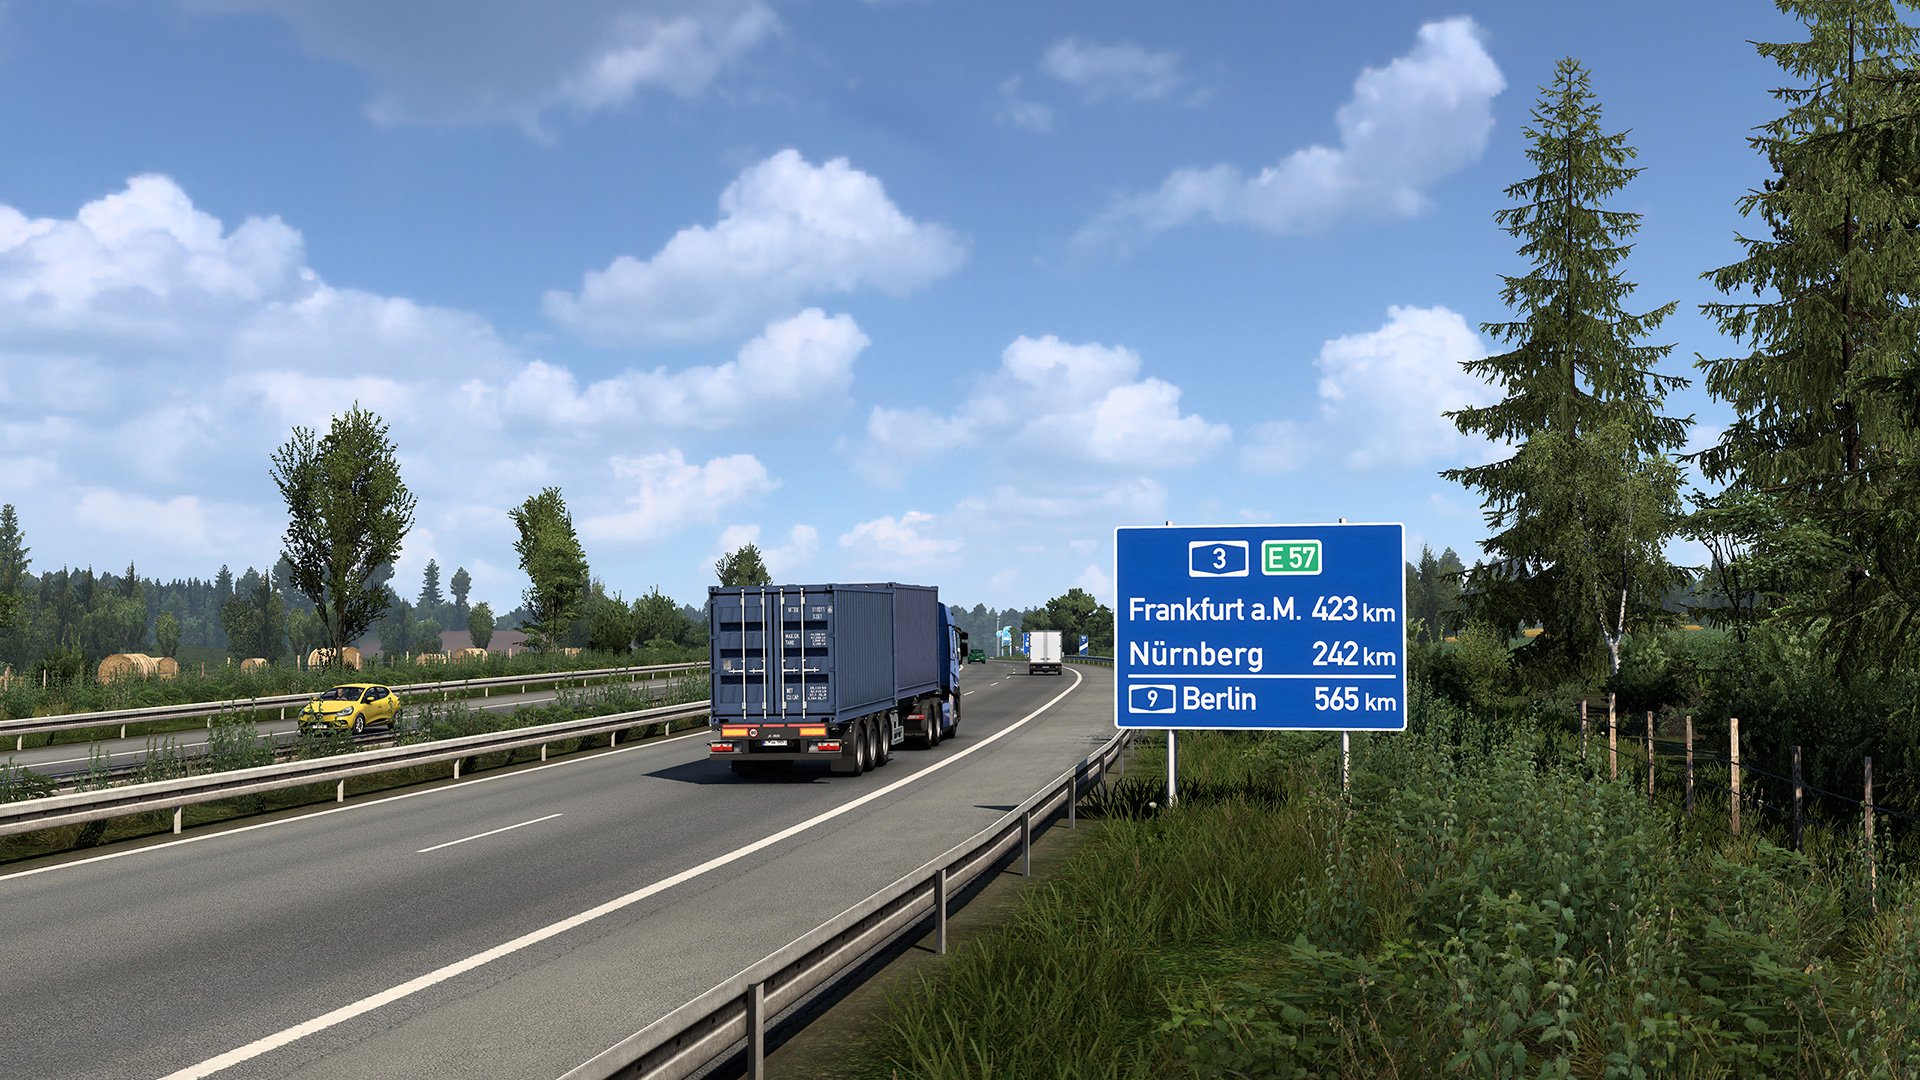 More information about "Euro Truck Simulator 2: aggiornamento v1.44 disponibile"